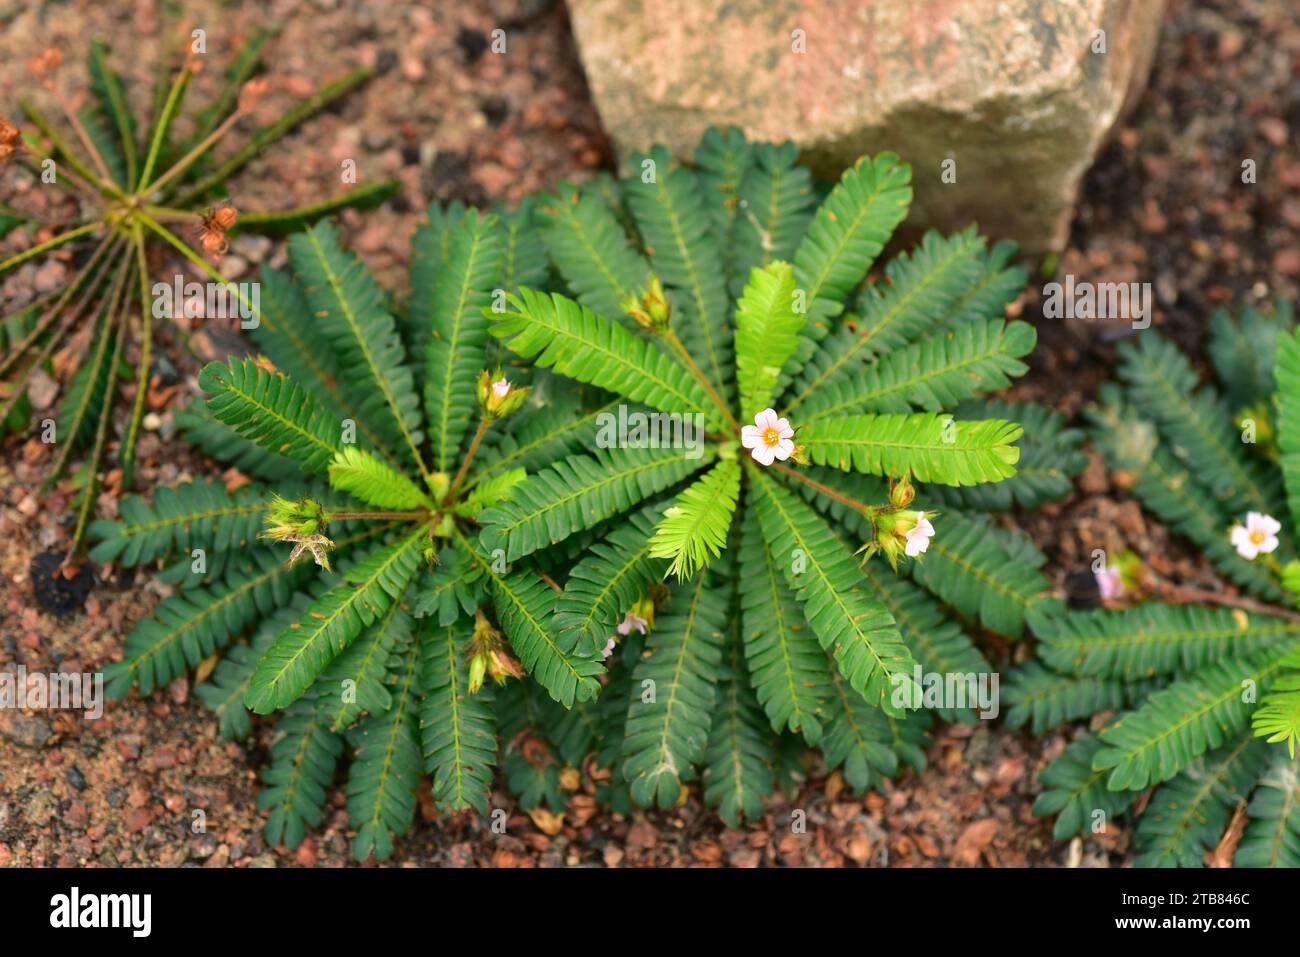 Le petit arbre (Biophytum sensitivum) est une plante médicinale originaire de l'Asie du sud-est. Banque D'Images